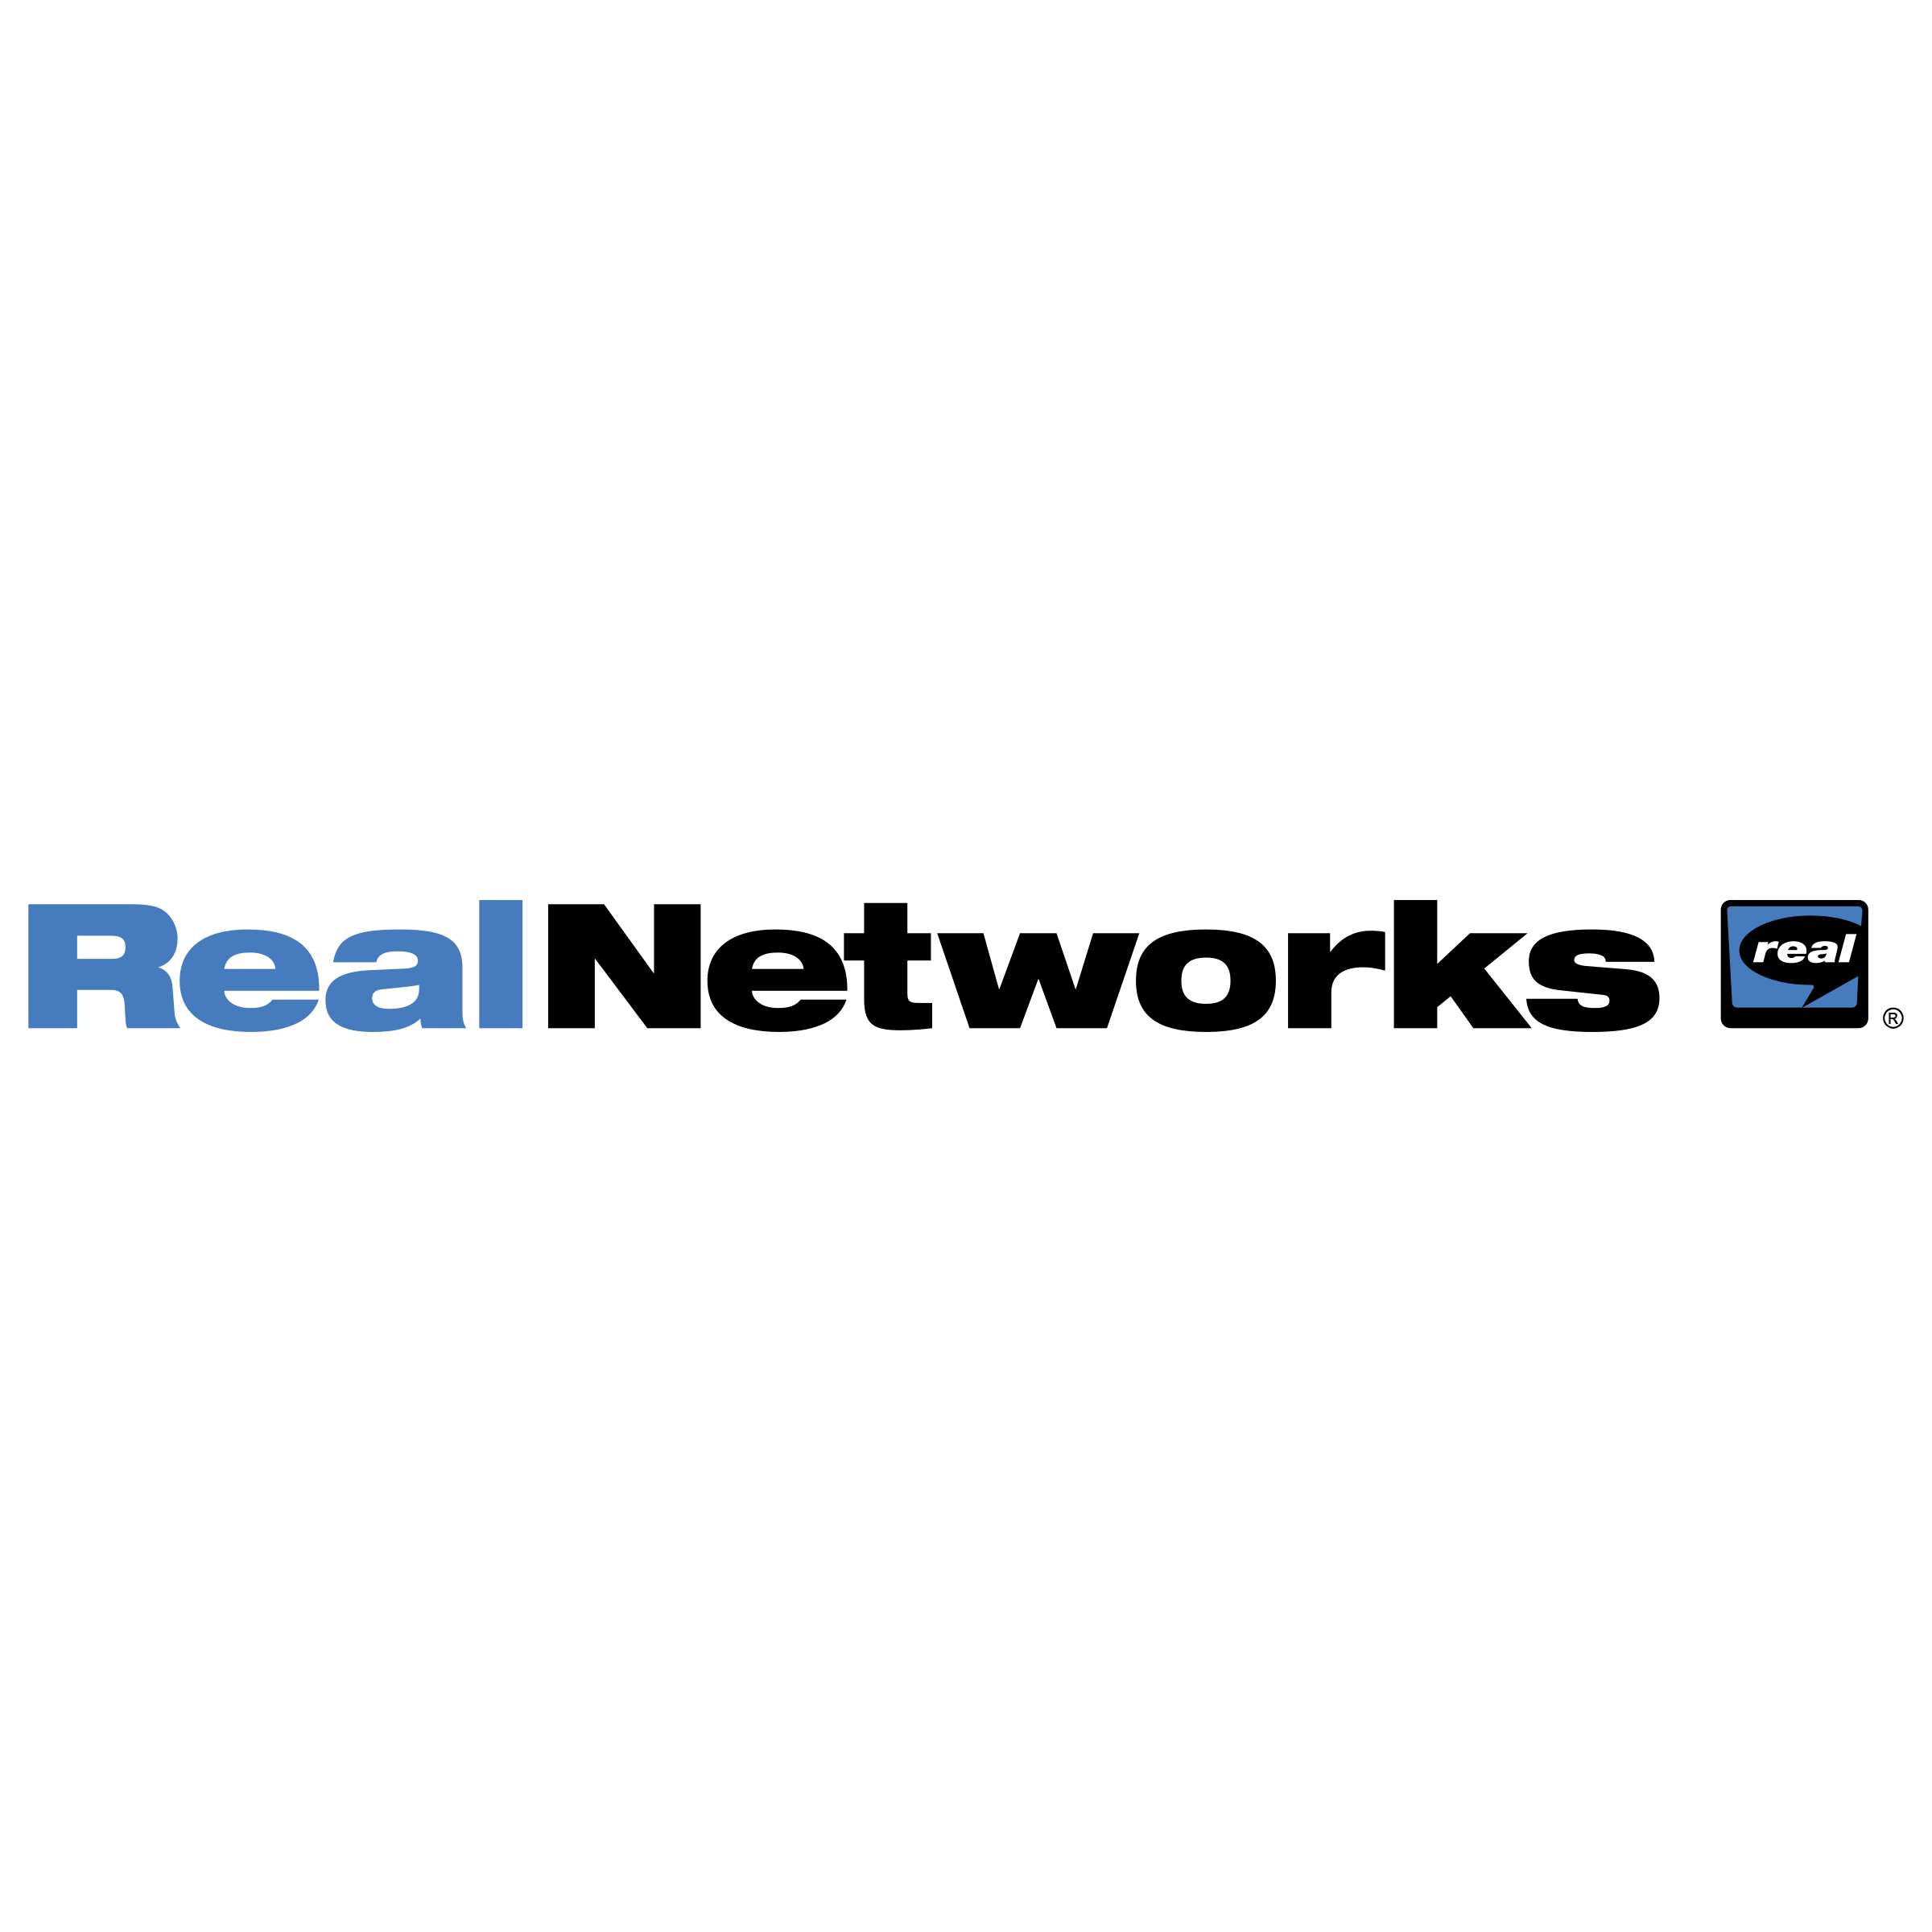 RealNetworks Logo - RealNetworks Logo PNG Transparent & SVG Vector